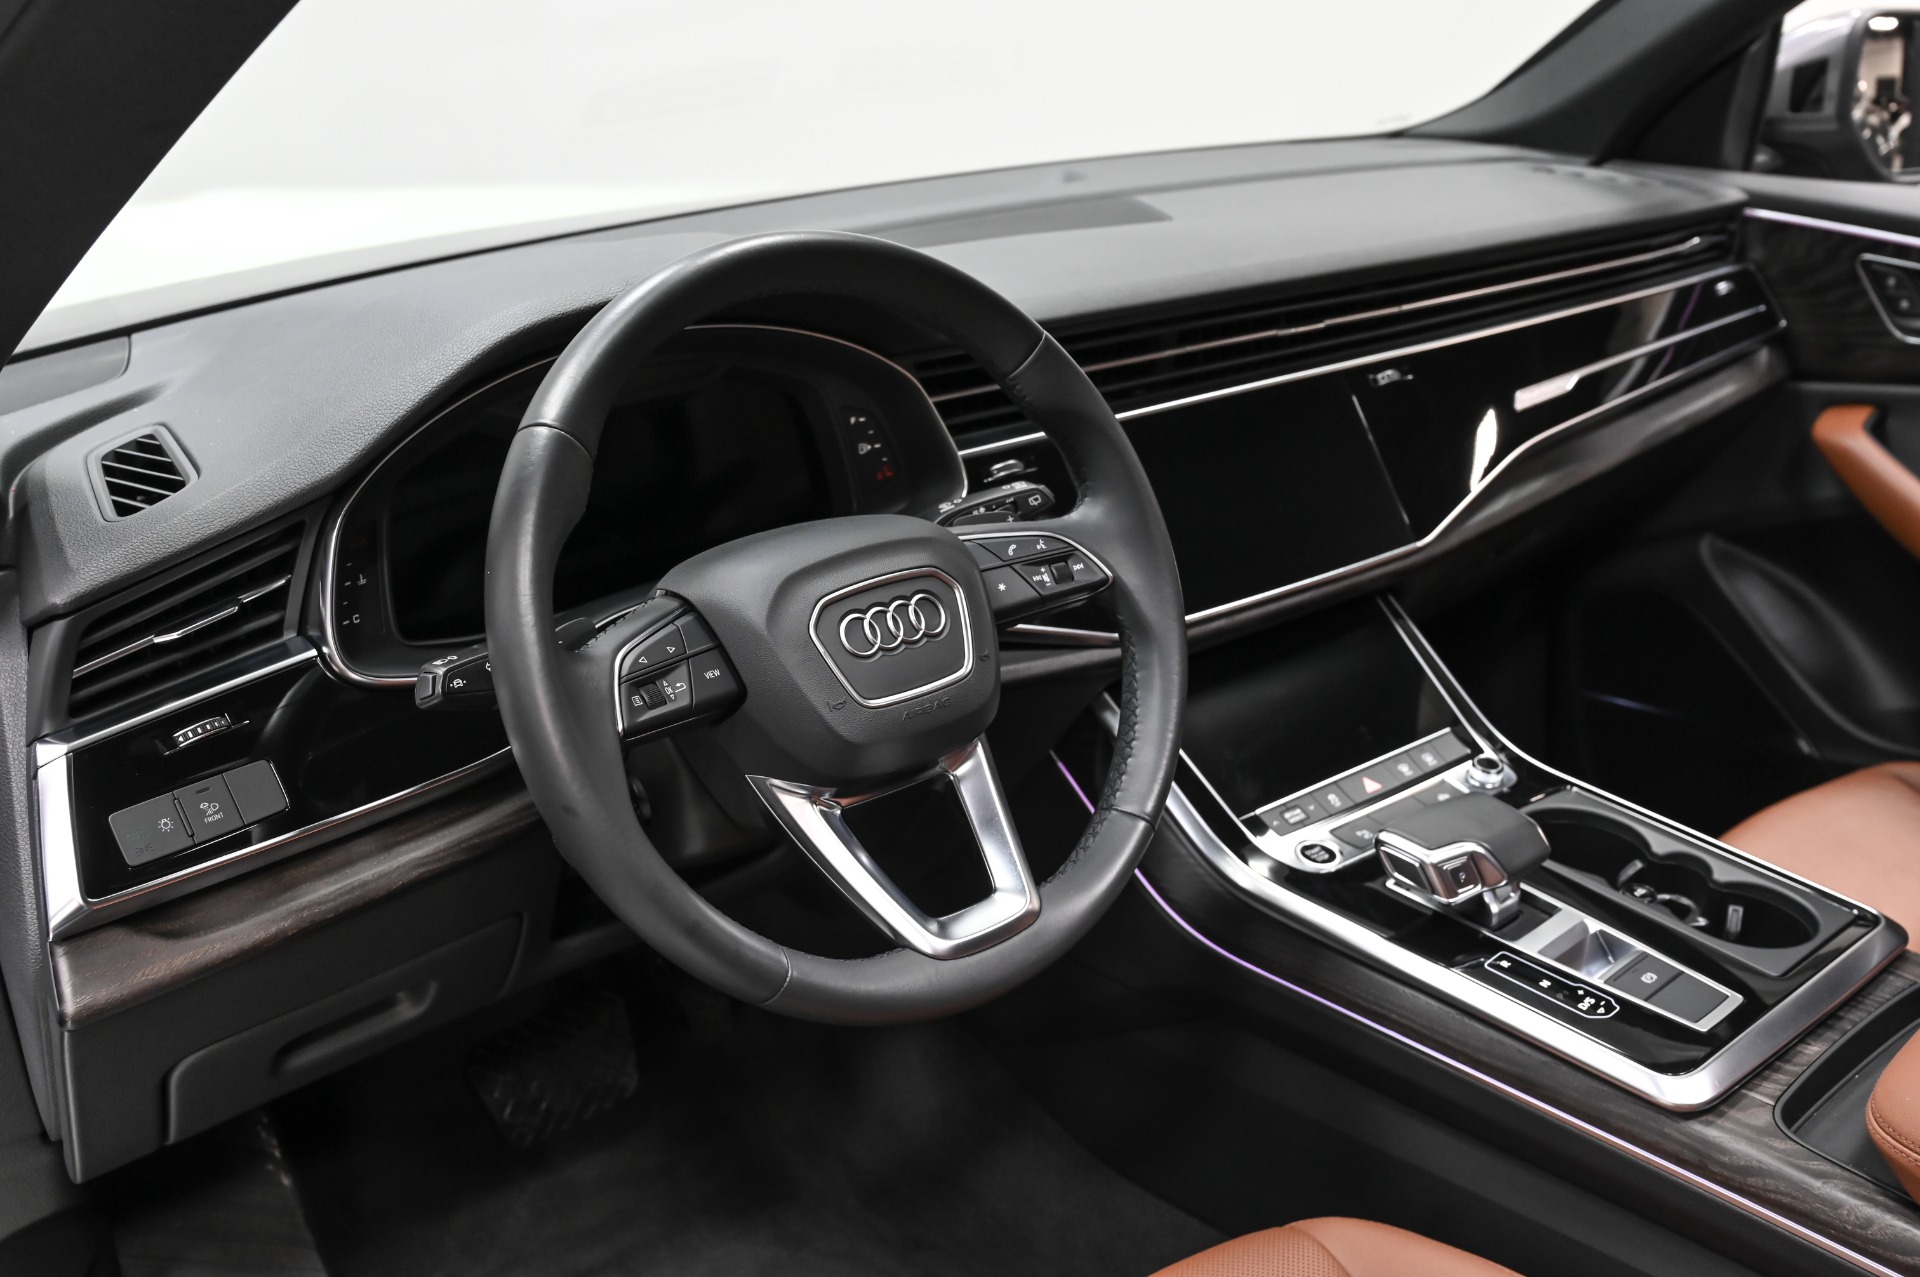 https://www.perfectautocollection.com/imagetag/2952/5/l/Used-2021-Audi-Q8-55-Premium-Plus-quattro-1700862857.jpg